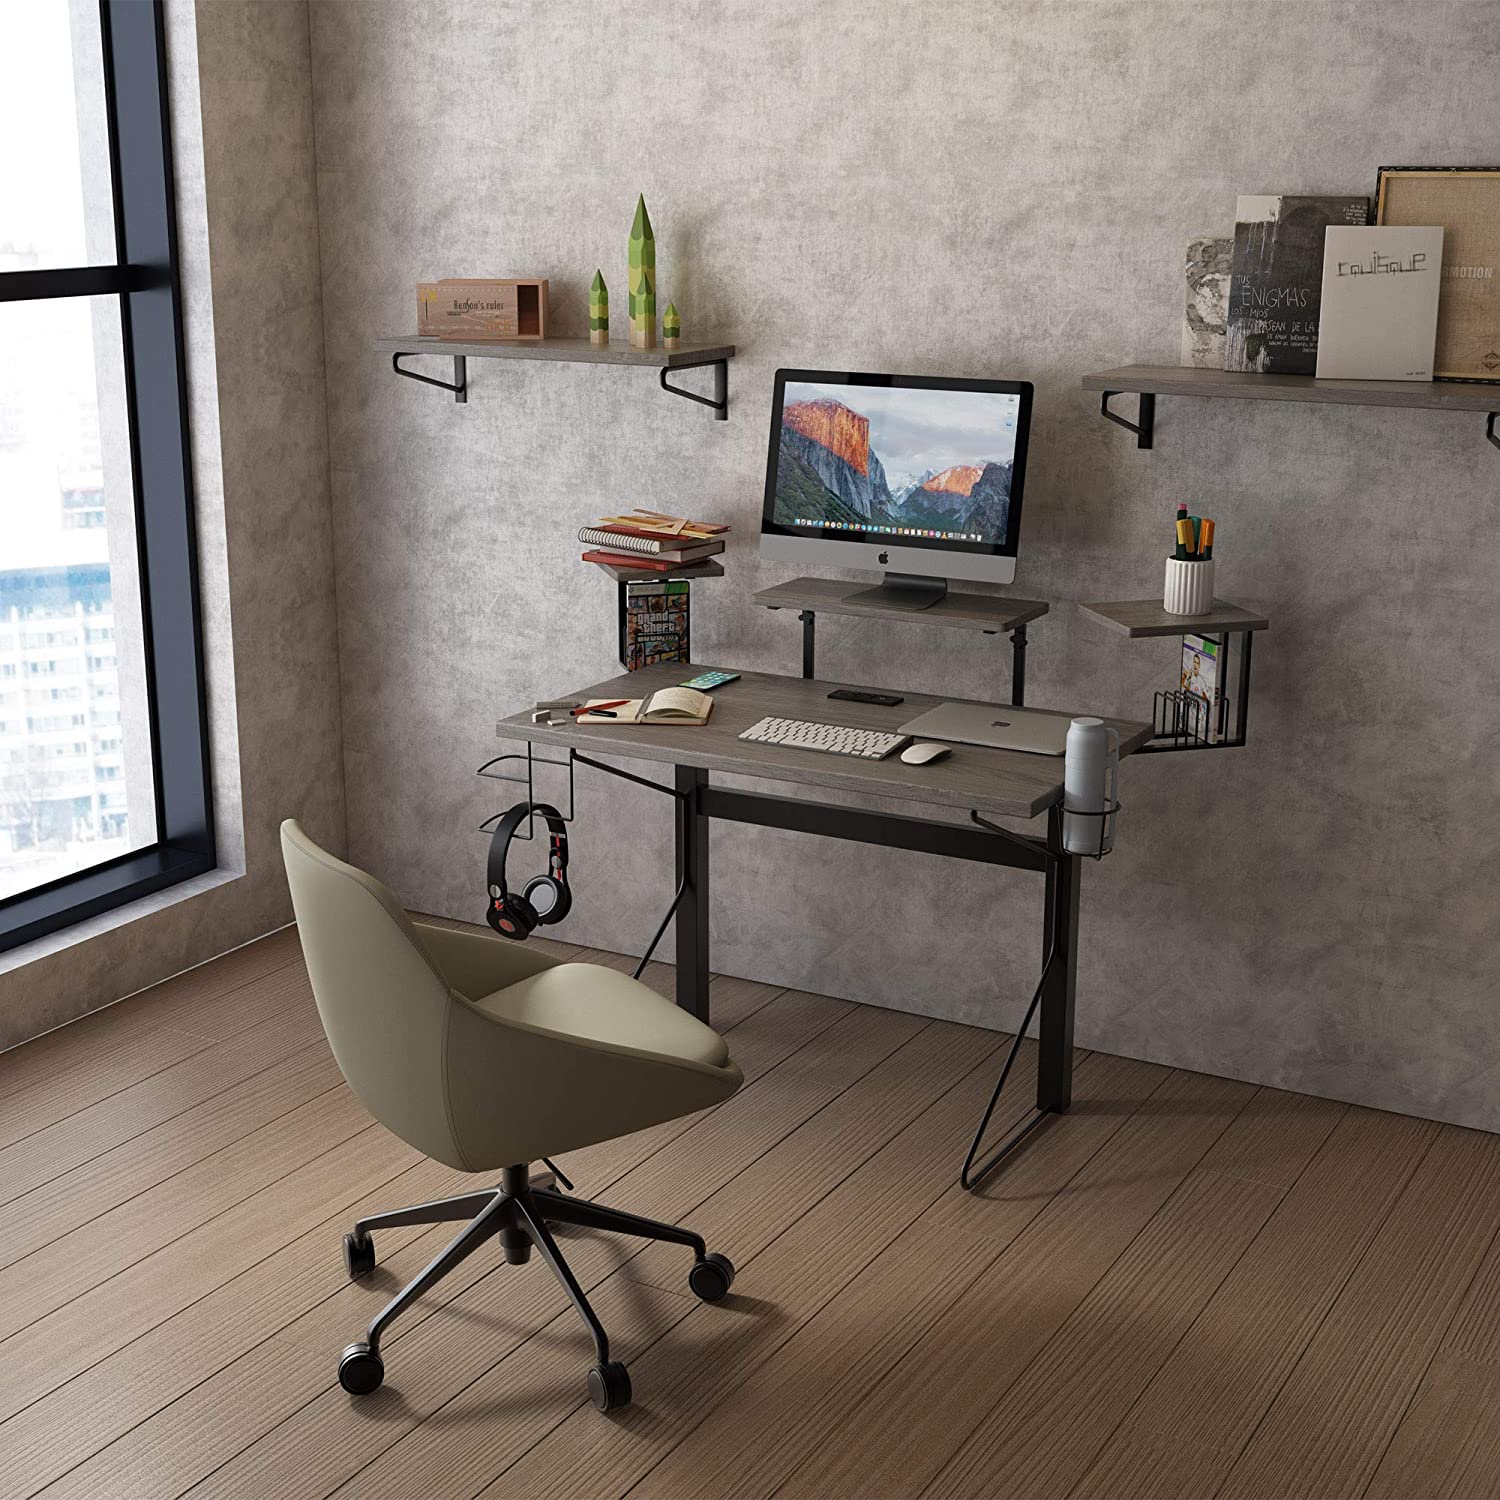 Airbnb Workspace Desks